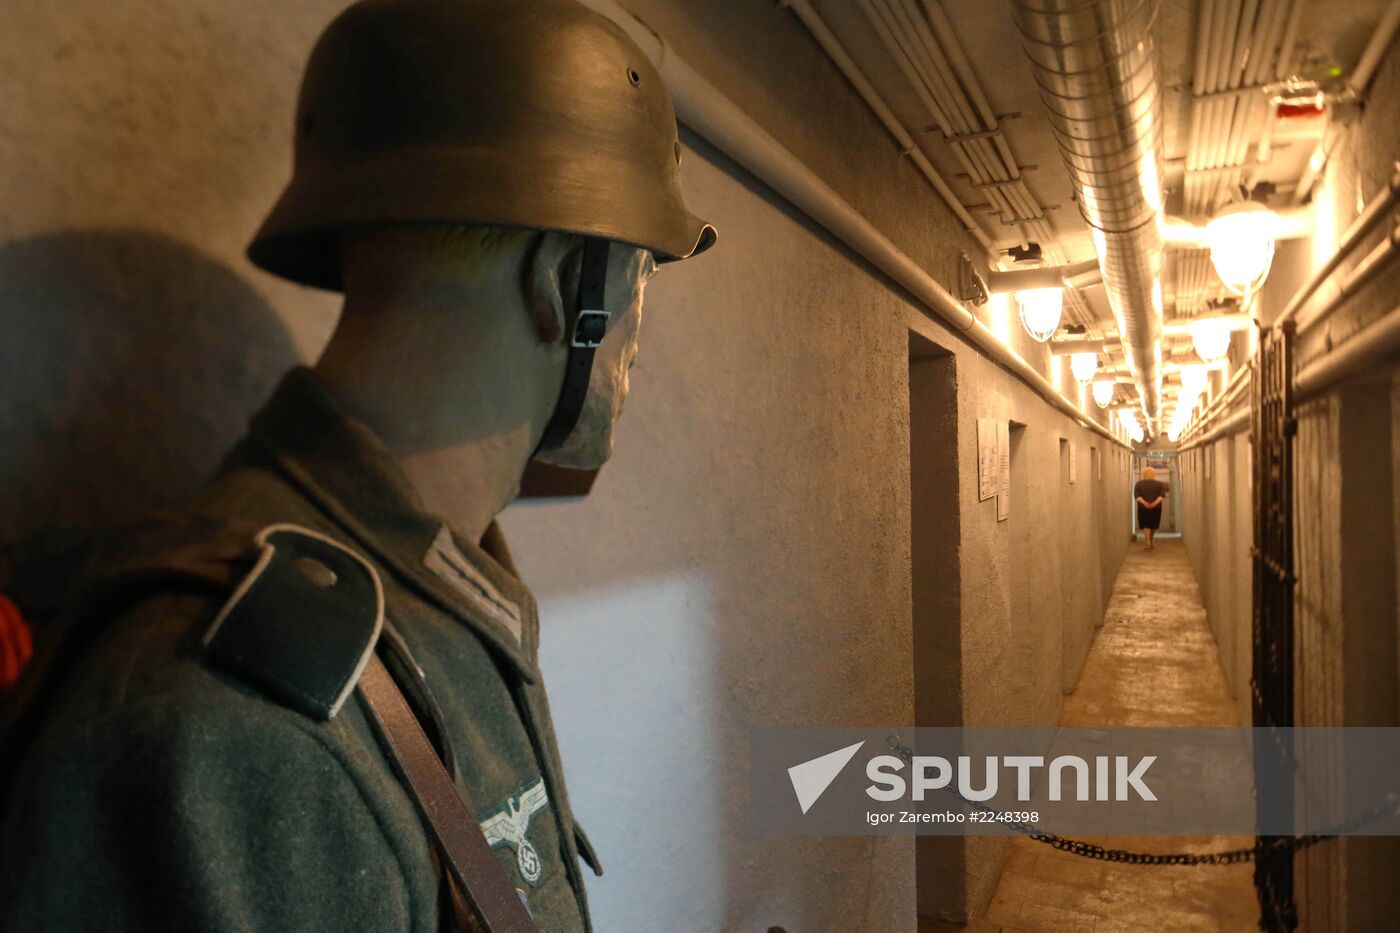 Exposition of Bunker Museum in Kaliningrad